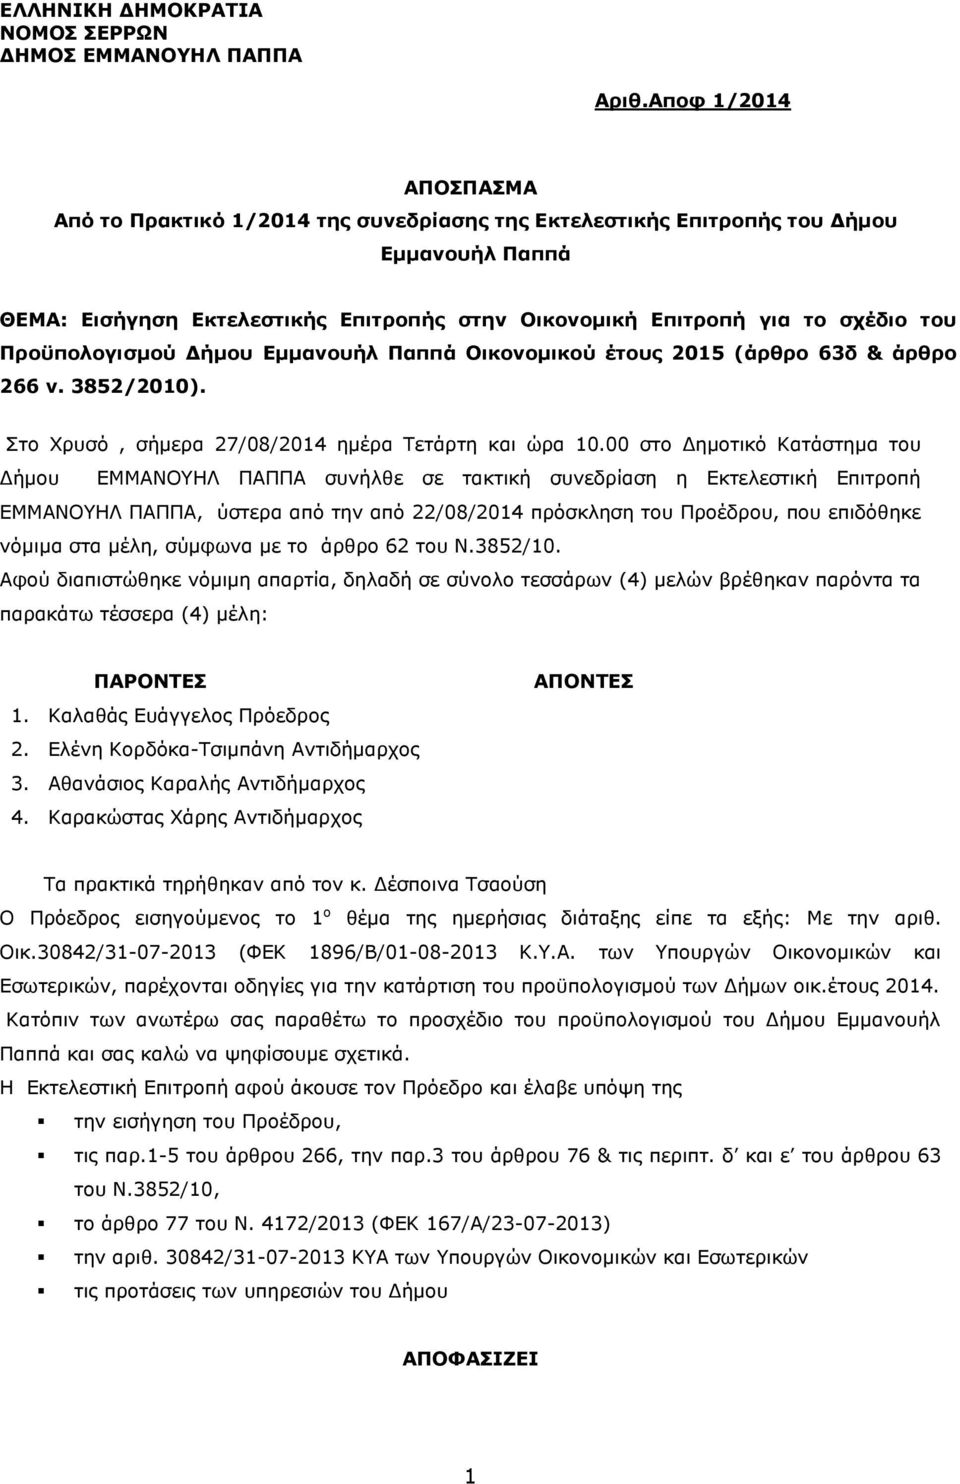 Προϋπολογισμού Δήμου Εμμανουήλ Παππά Οικονομικού έτους 2015 (άρθρο 63δ & άρθρο 266 ν. 3852/2010). Στο Χρυσό, σήμερα 27/08/2014 ημέρα Τετάρτη και ώρα 10.